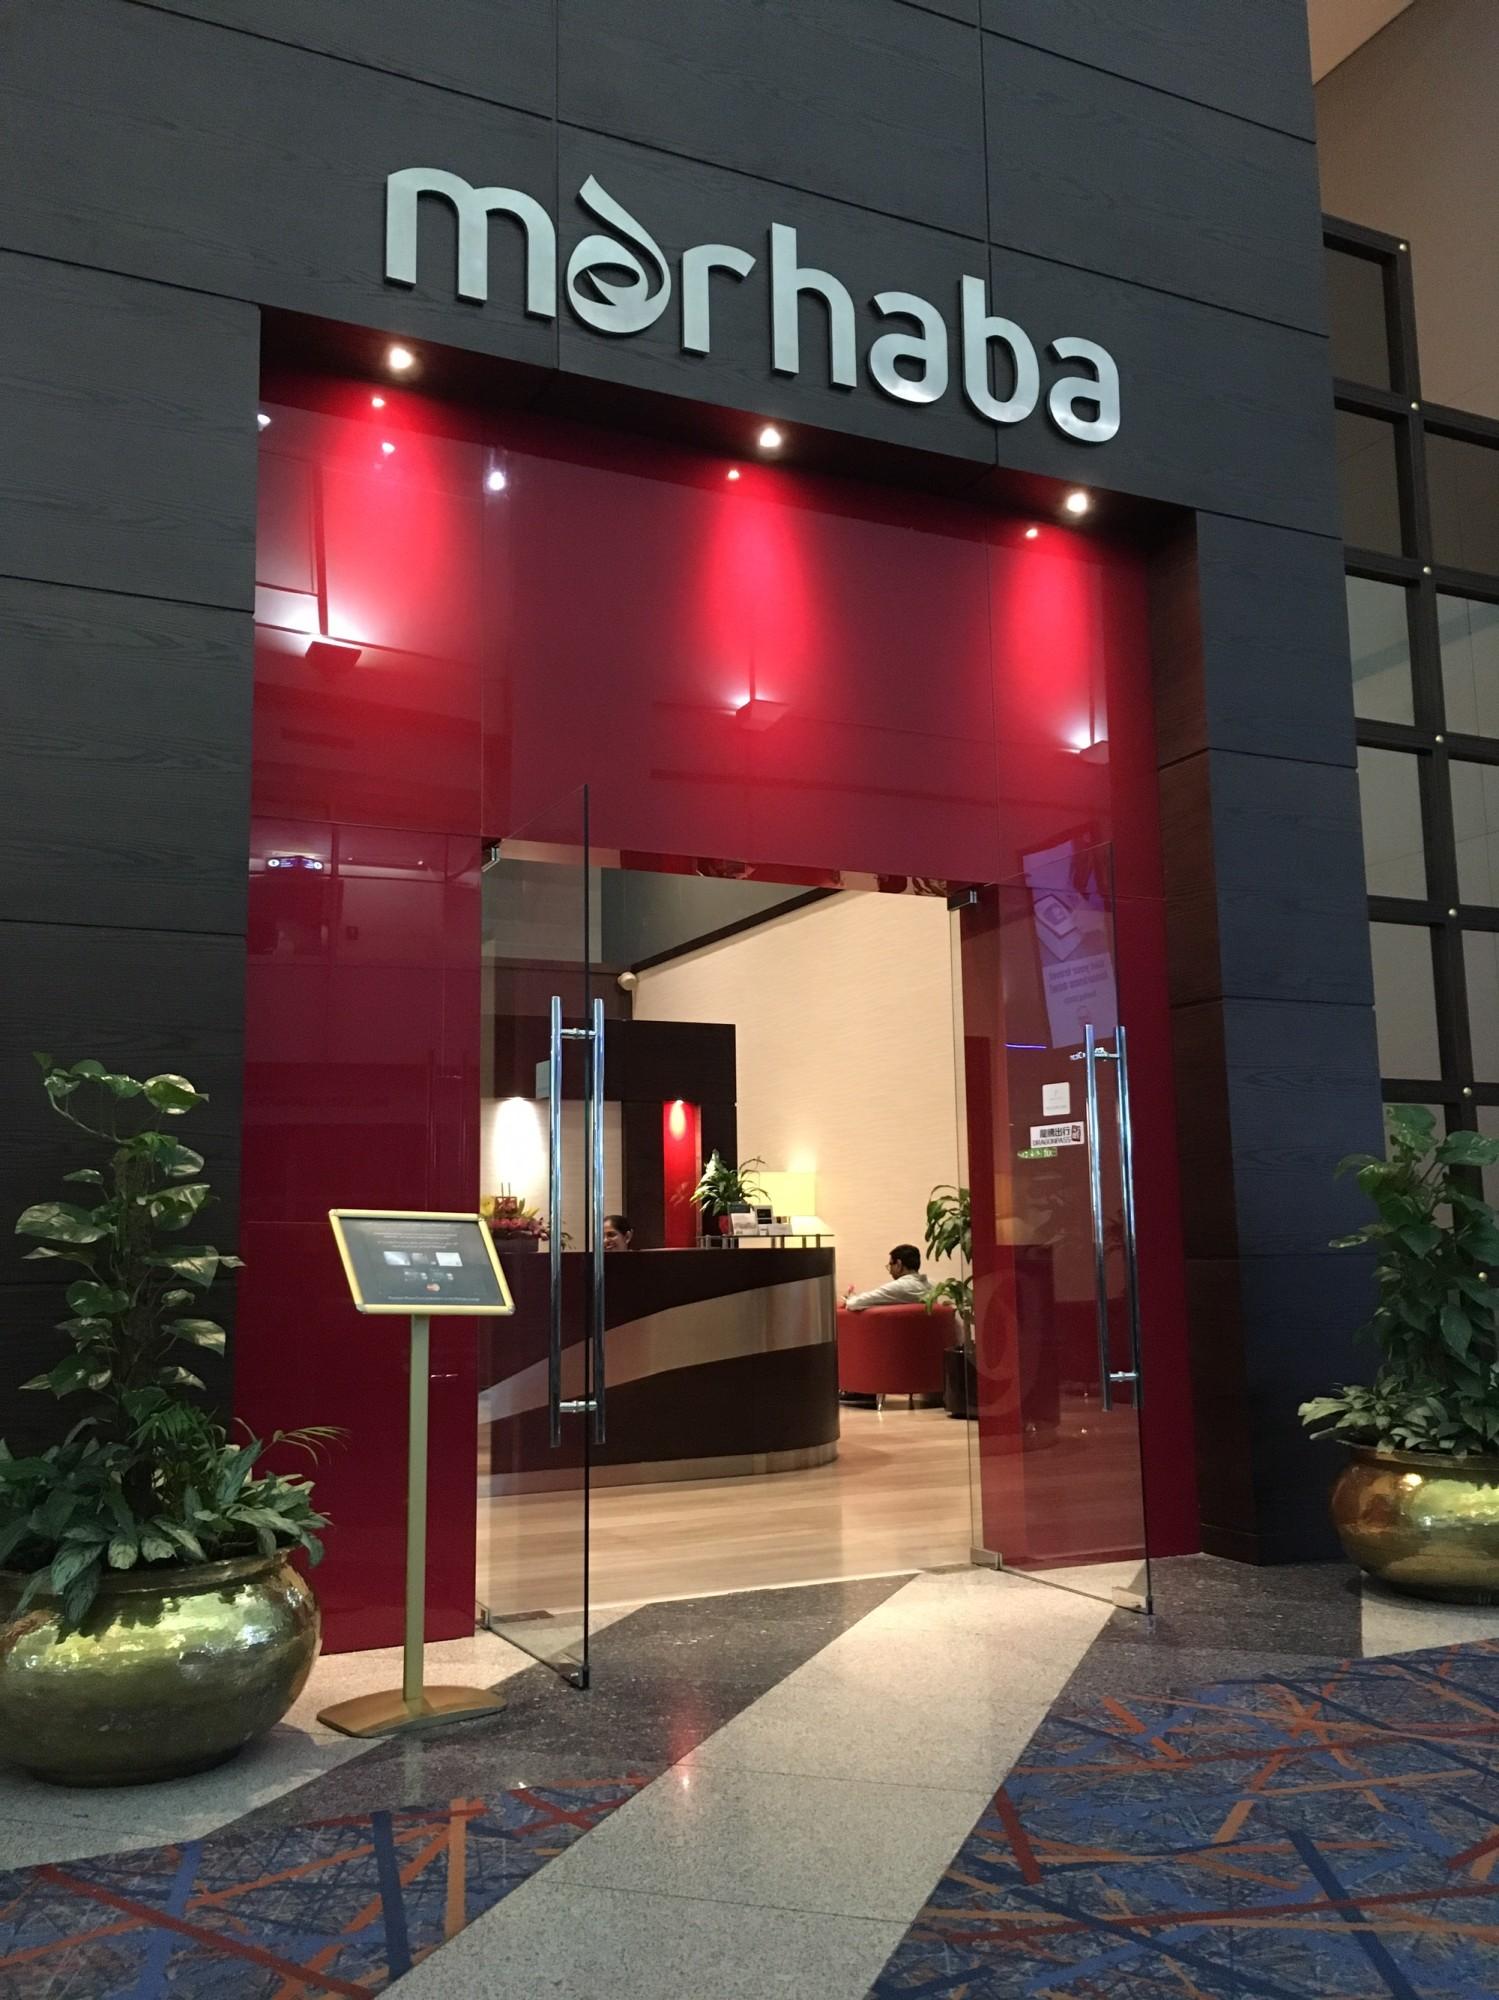 Marhaba Lounge image 14 of 64